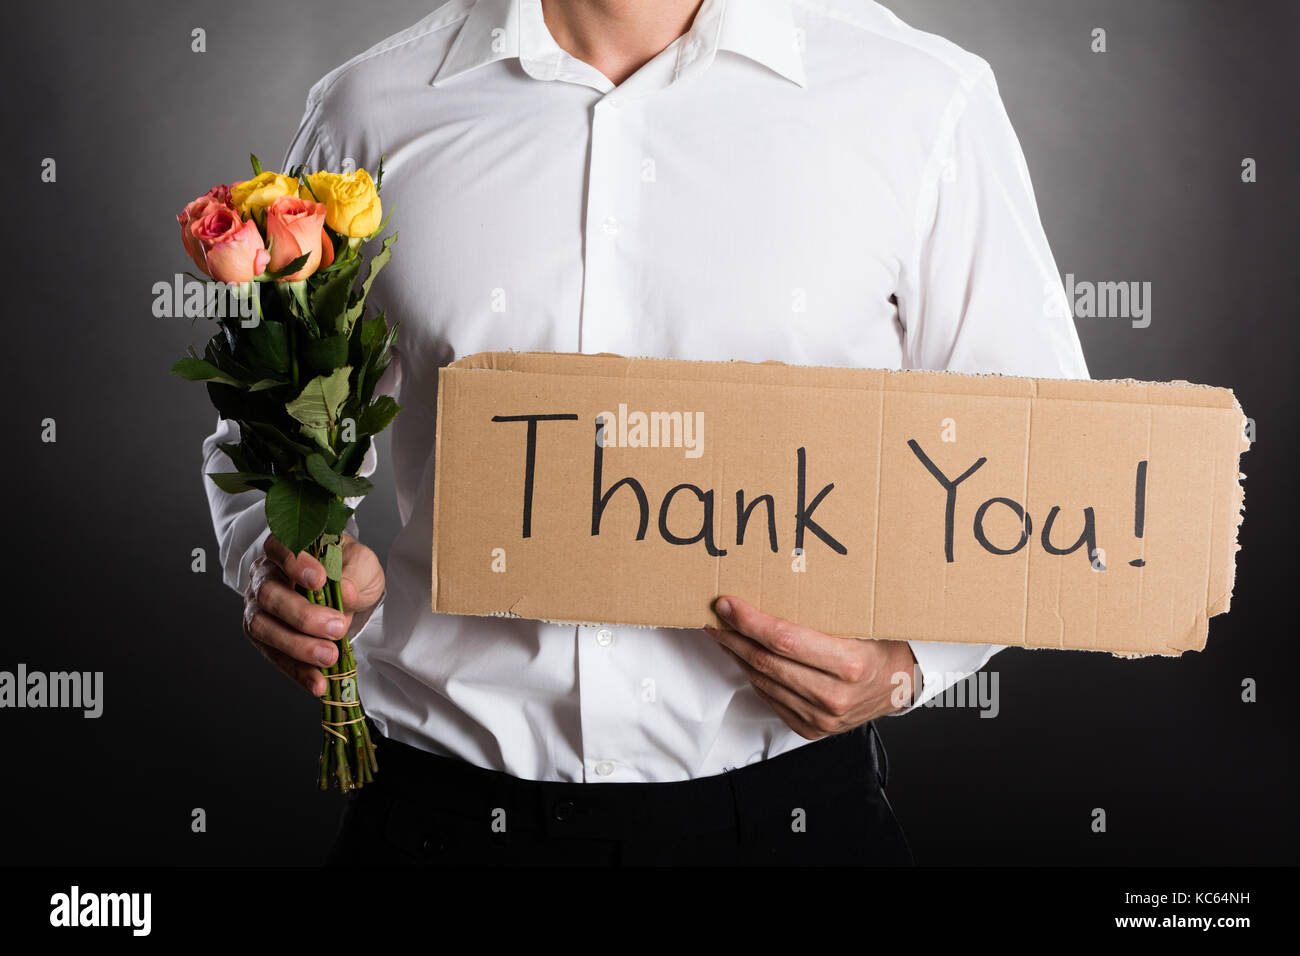 Mann mit Rosen und vielen Dank Text auf Karton gegen grauen Hintergrund  geschrieben Stockfotografie - Alamy